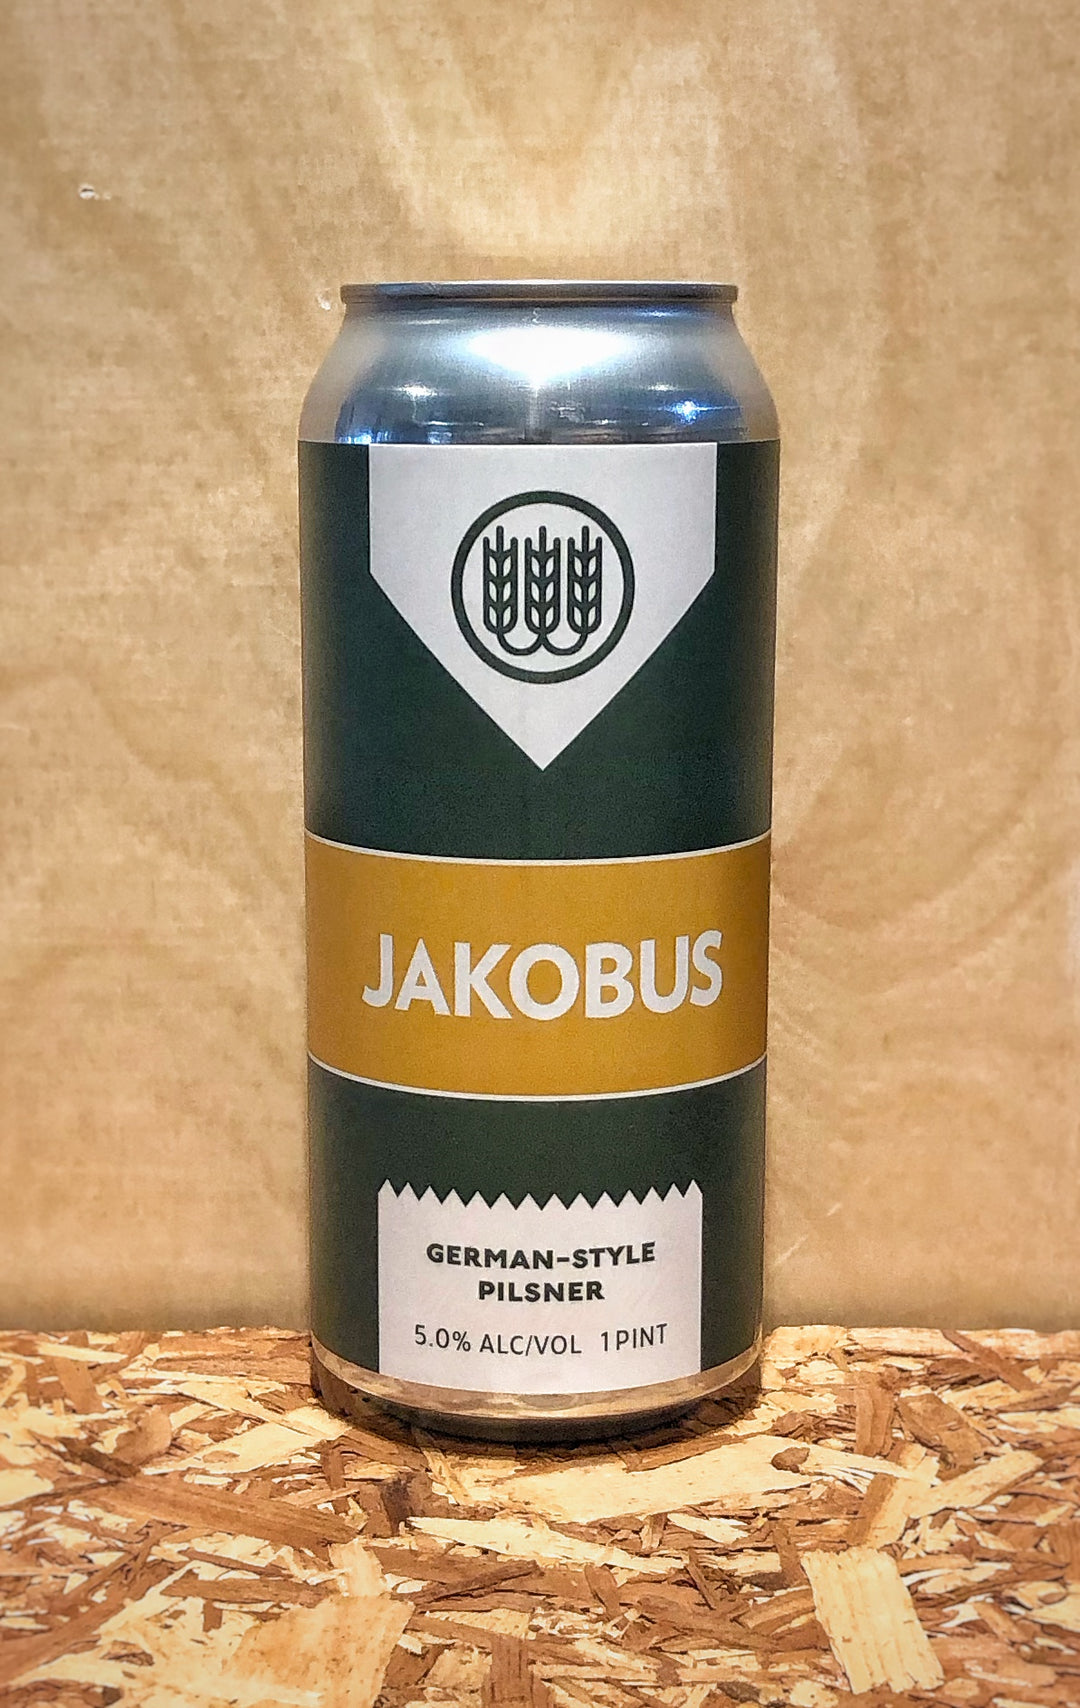 Schilling Beer Co. 'Jakobus' German Style Pilsner (Littleton, NH)